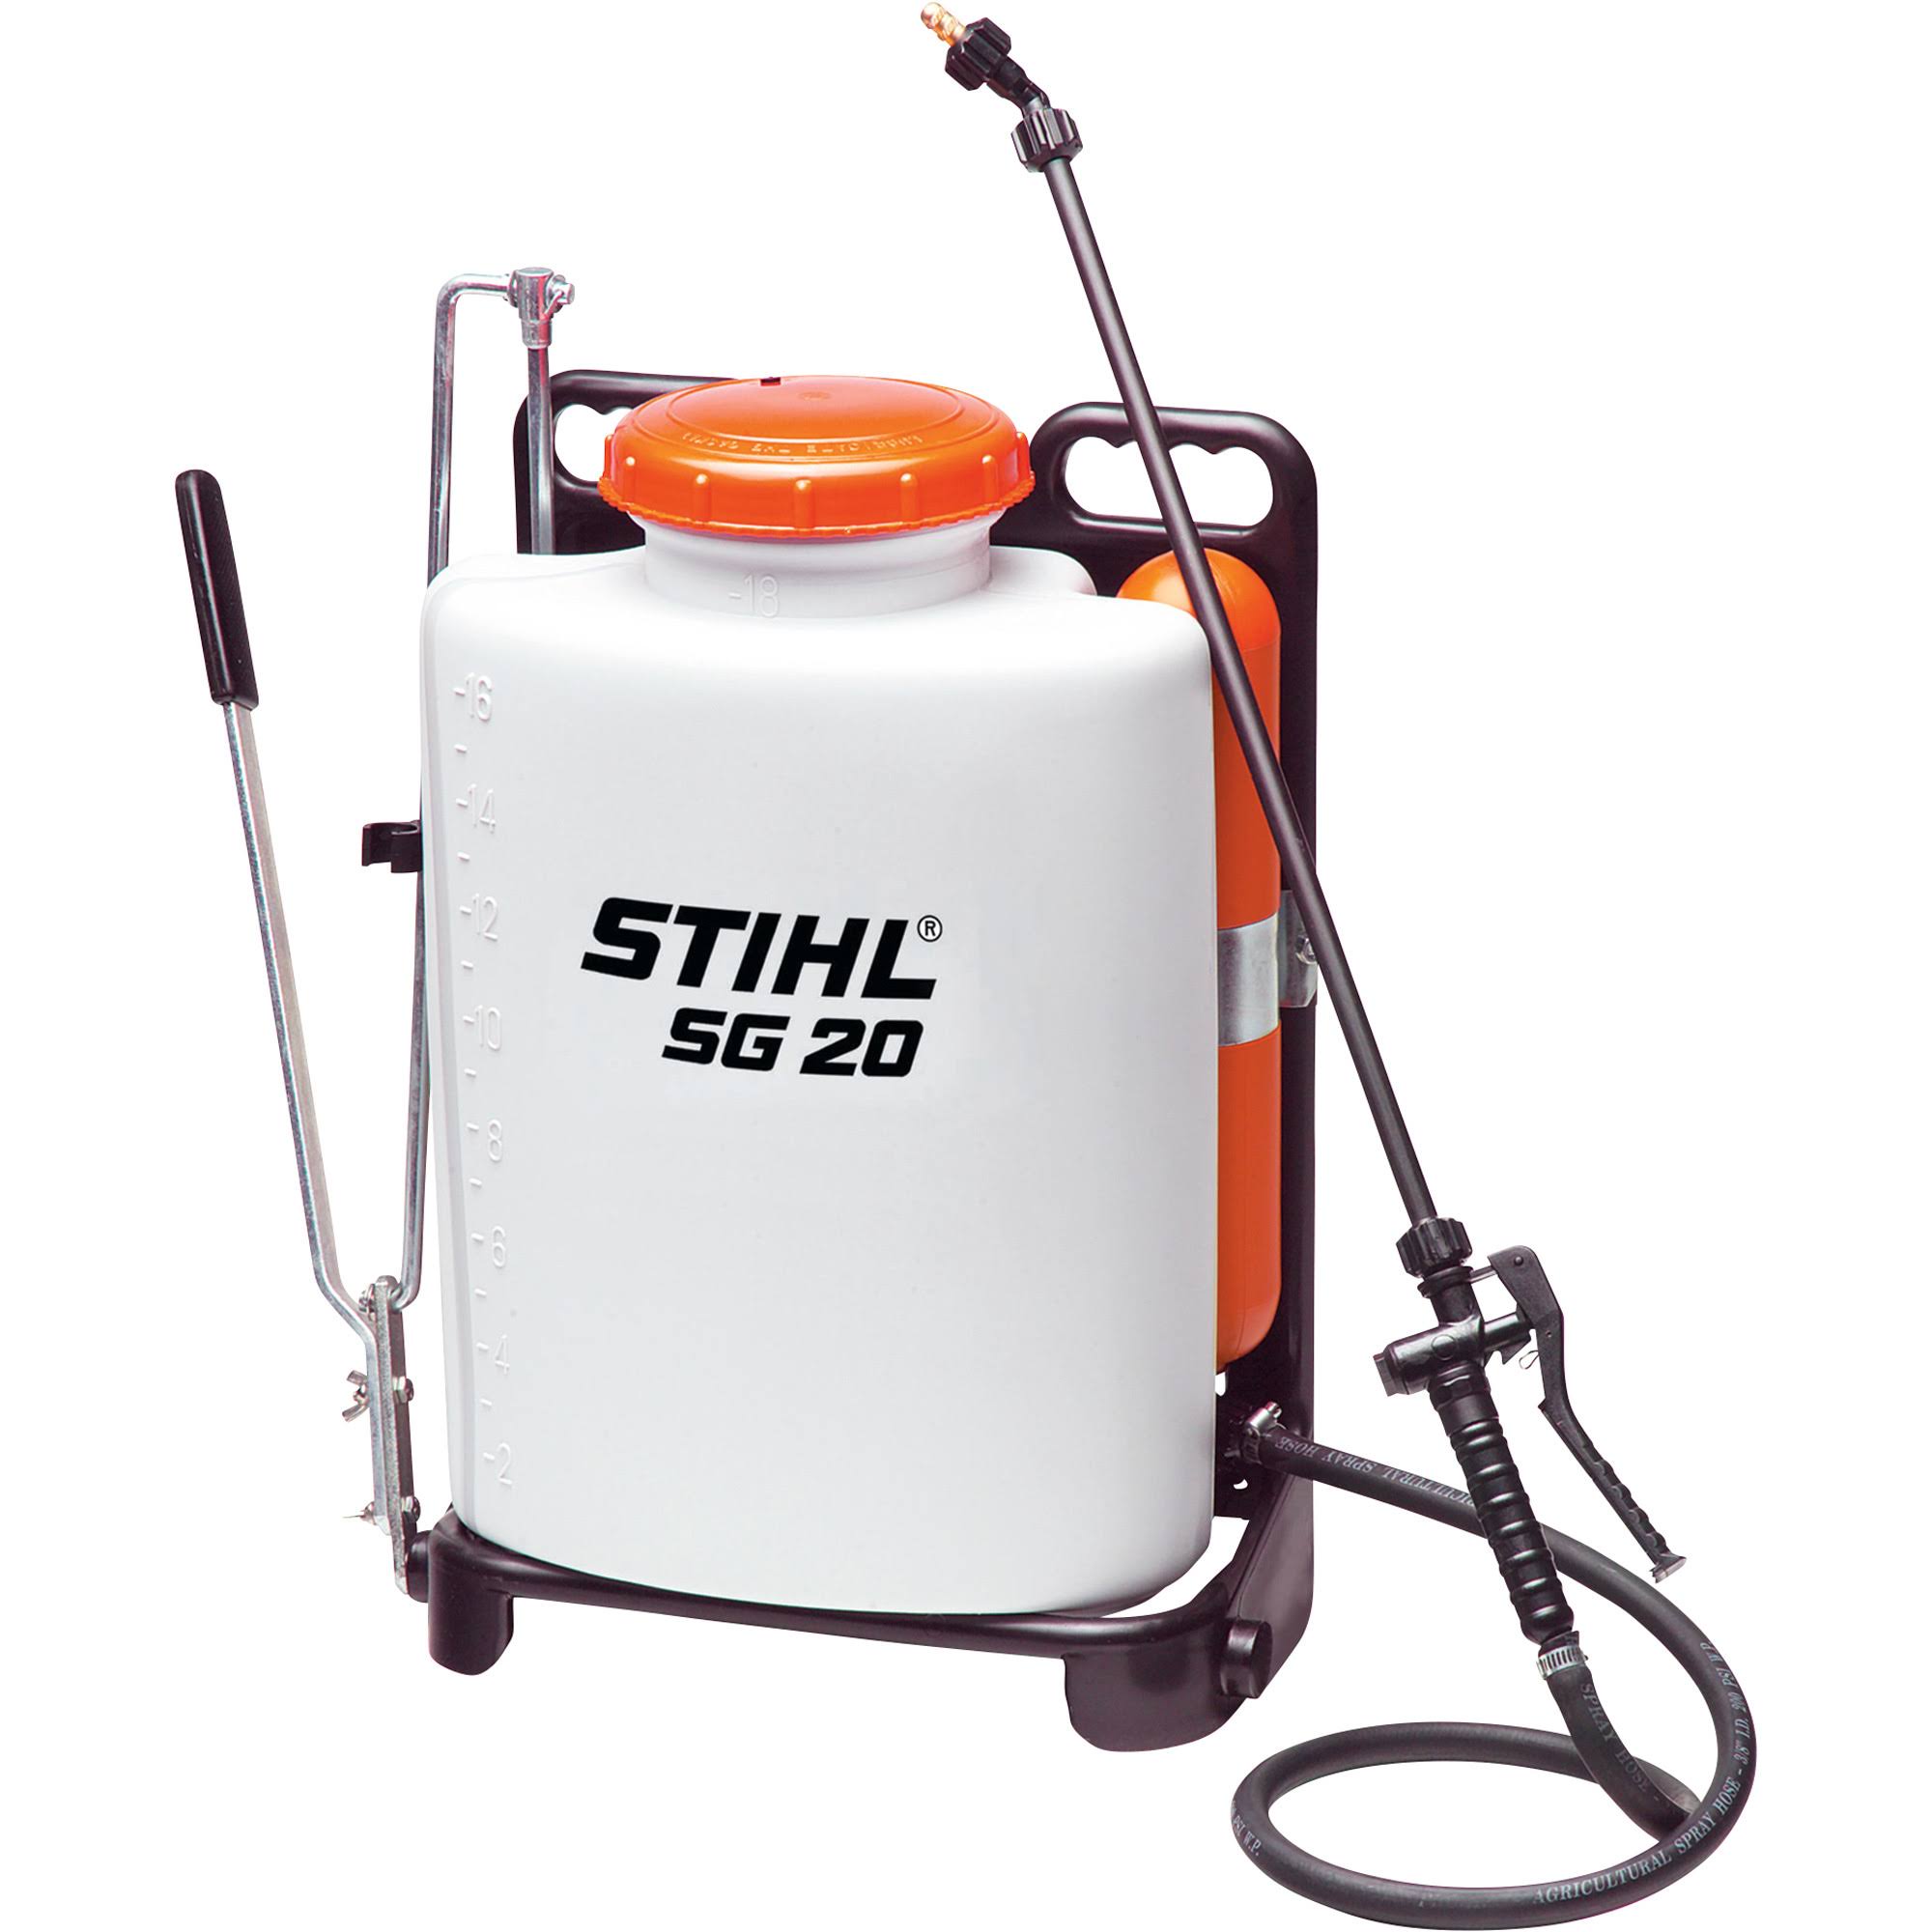 Stihl Sg 20 Backpack Sprayer